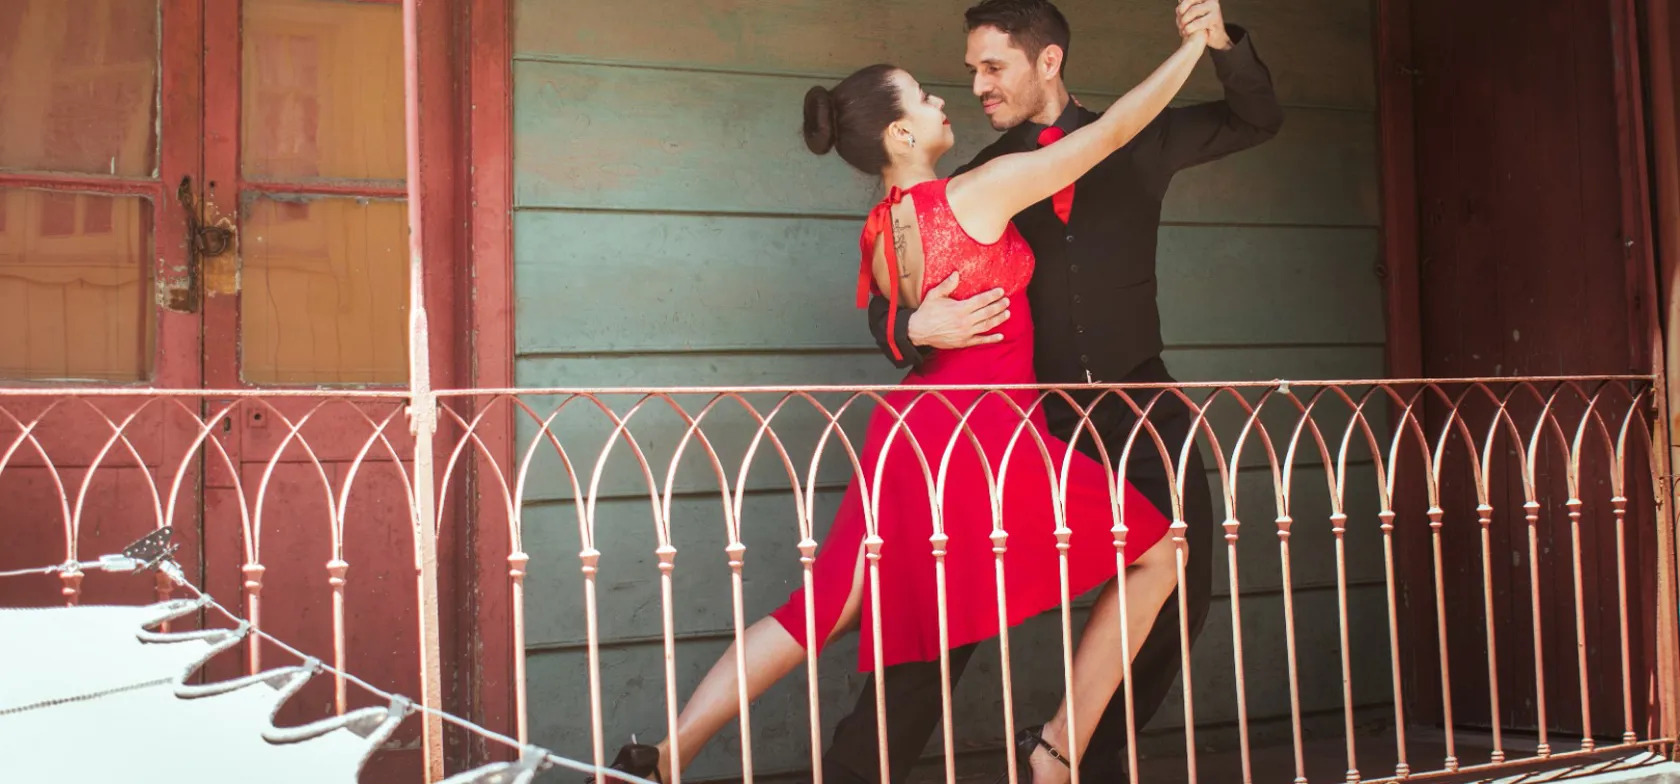 Tangoen opstod i Buenos Aires og bredte sig herfra til hele verden. Foto Leonardo Espina